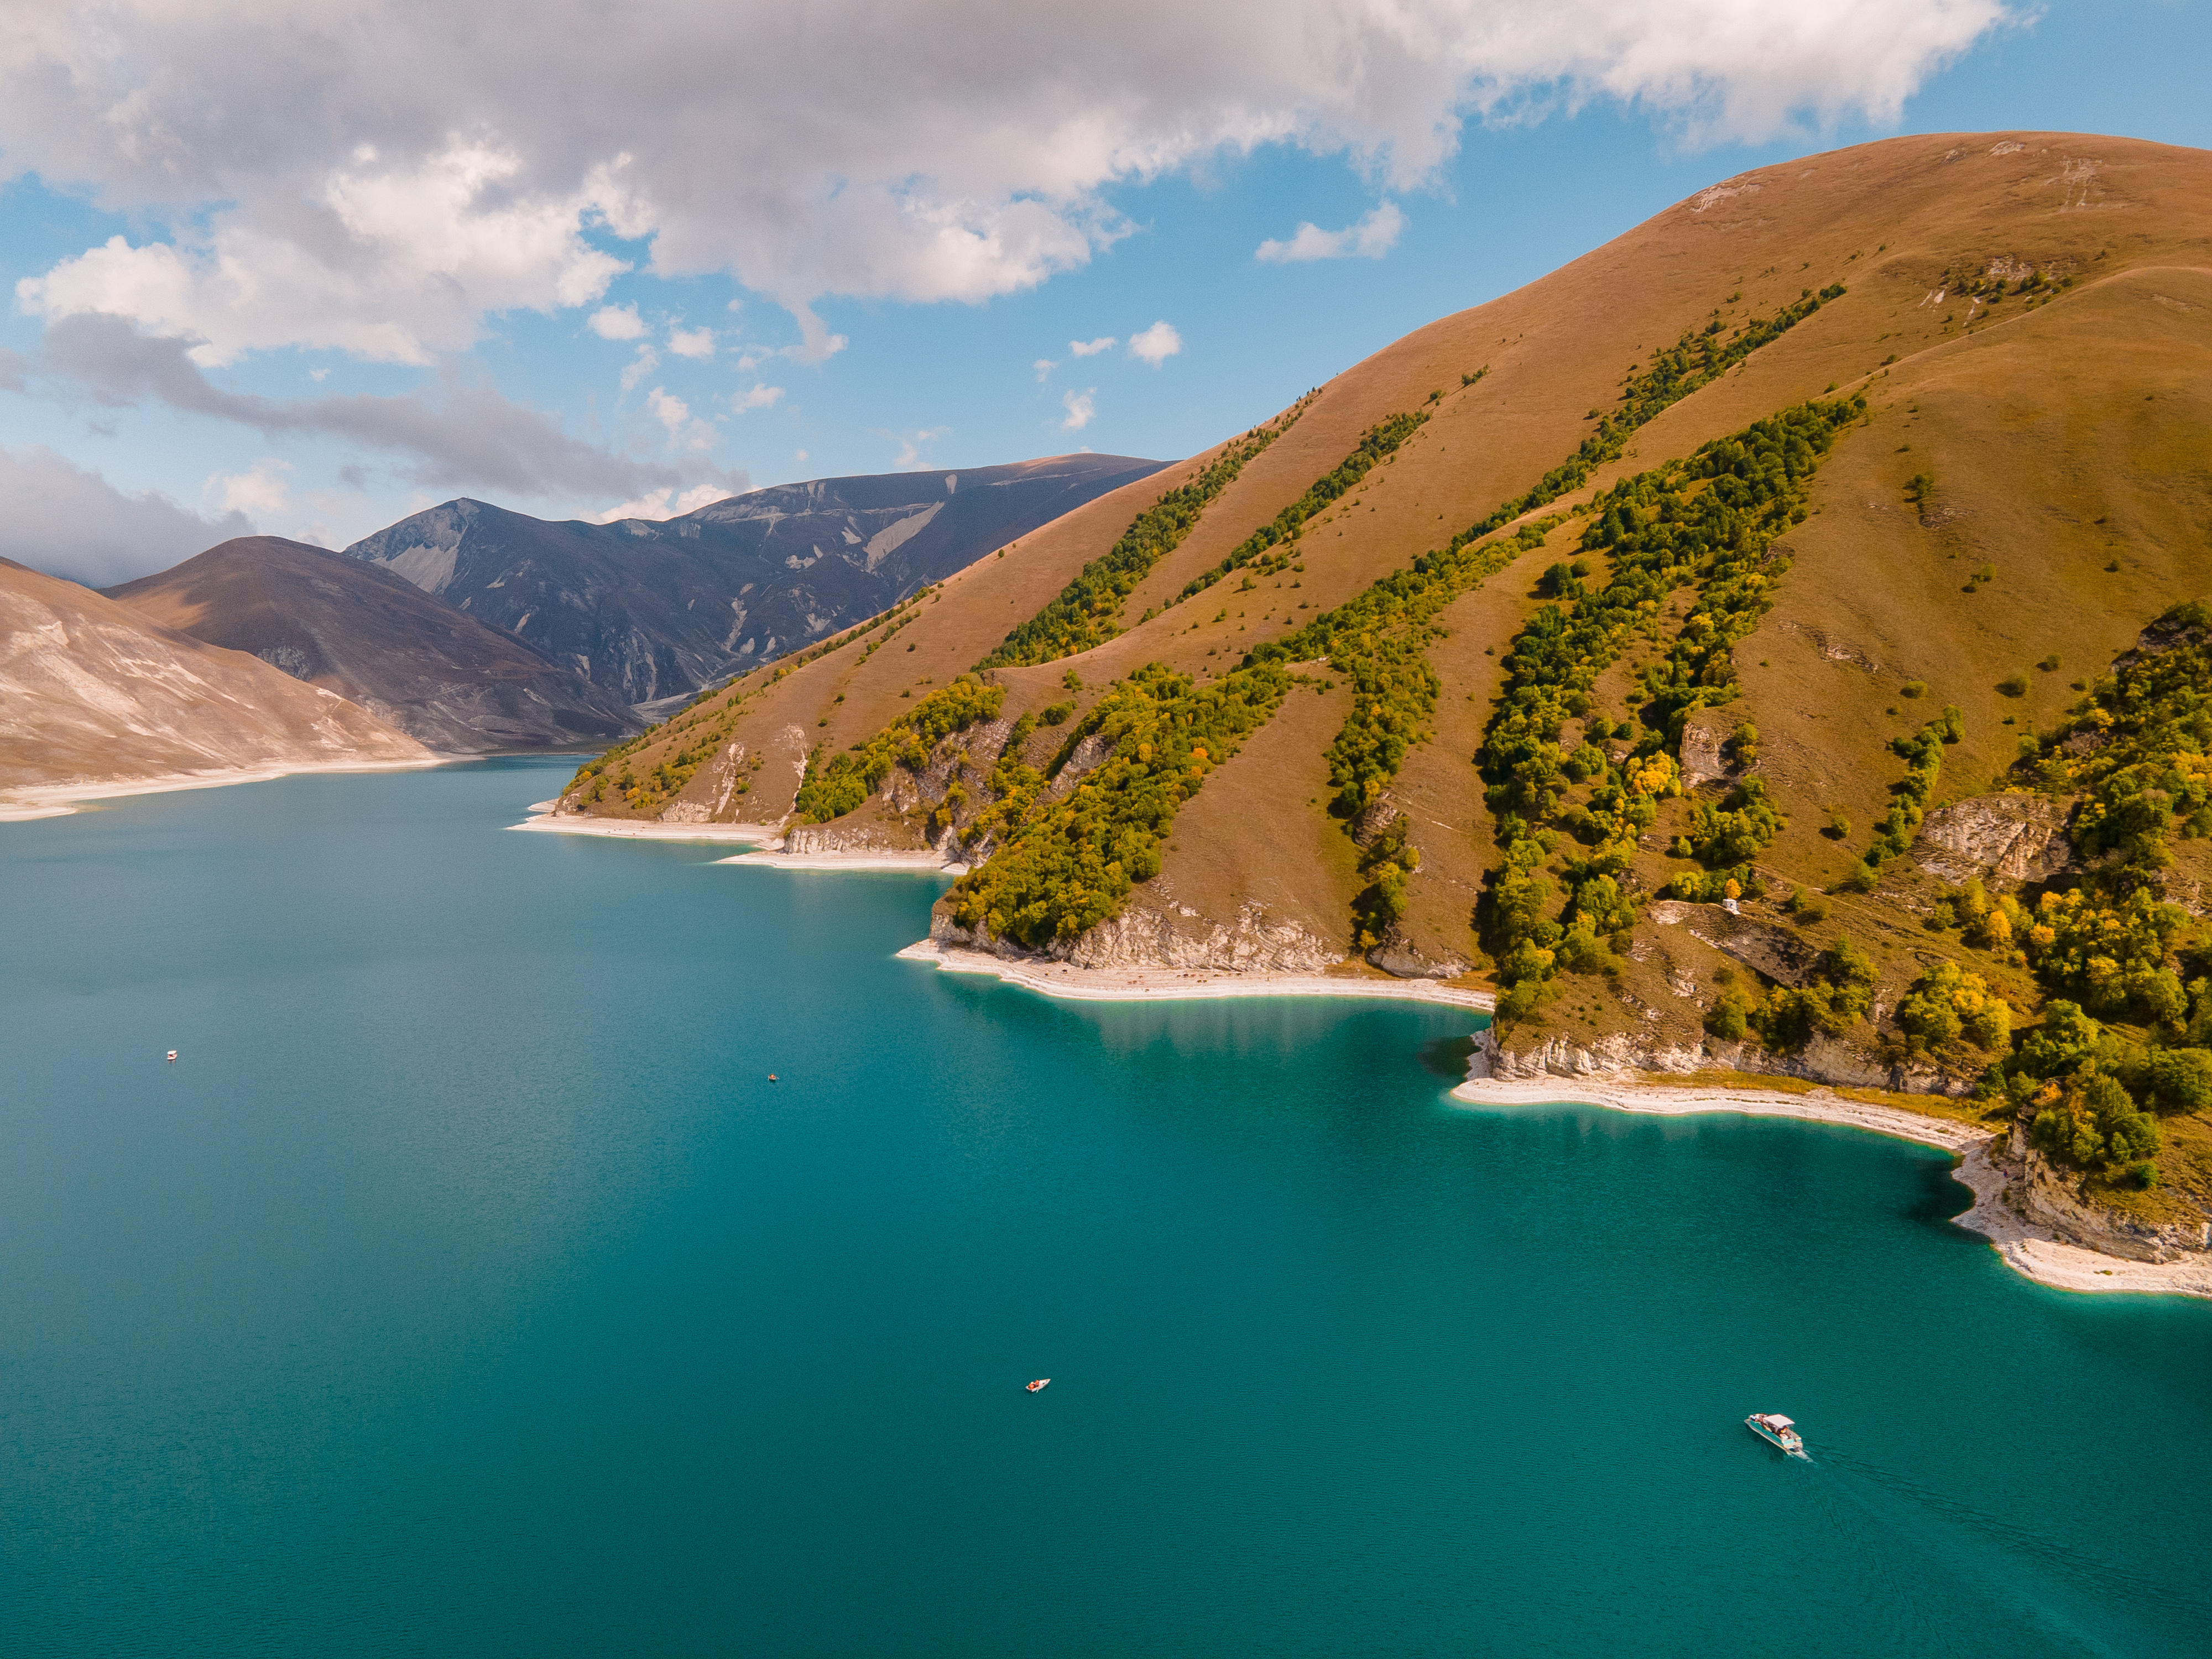 Озеро Кезеной-Ам, Горная Чечня I, экскурсии в горы Северного Кавказа